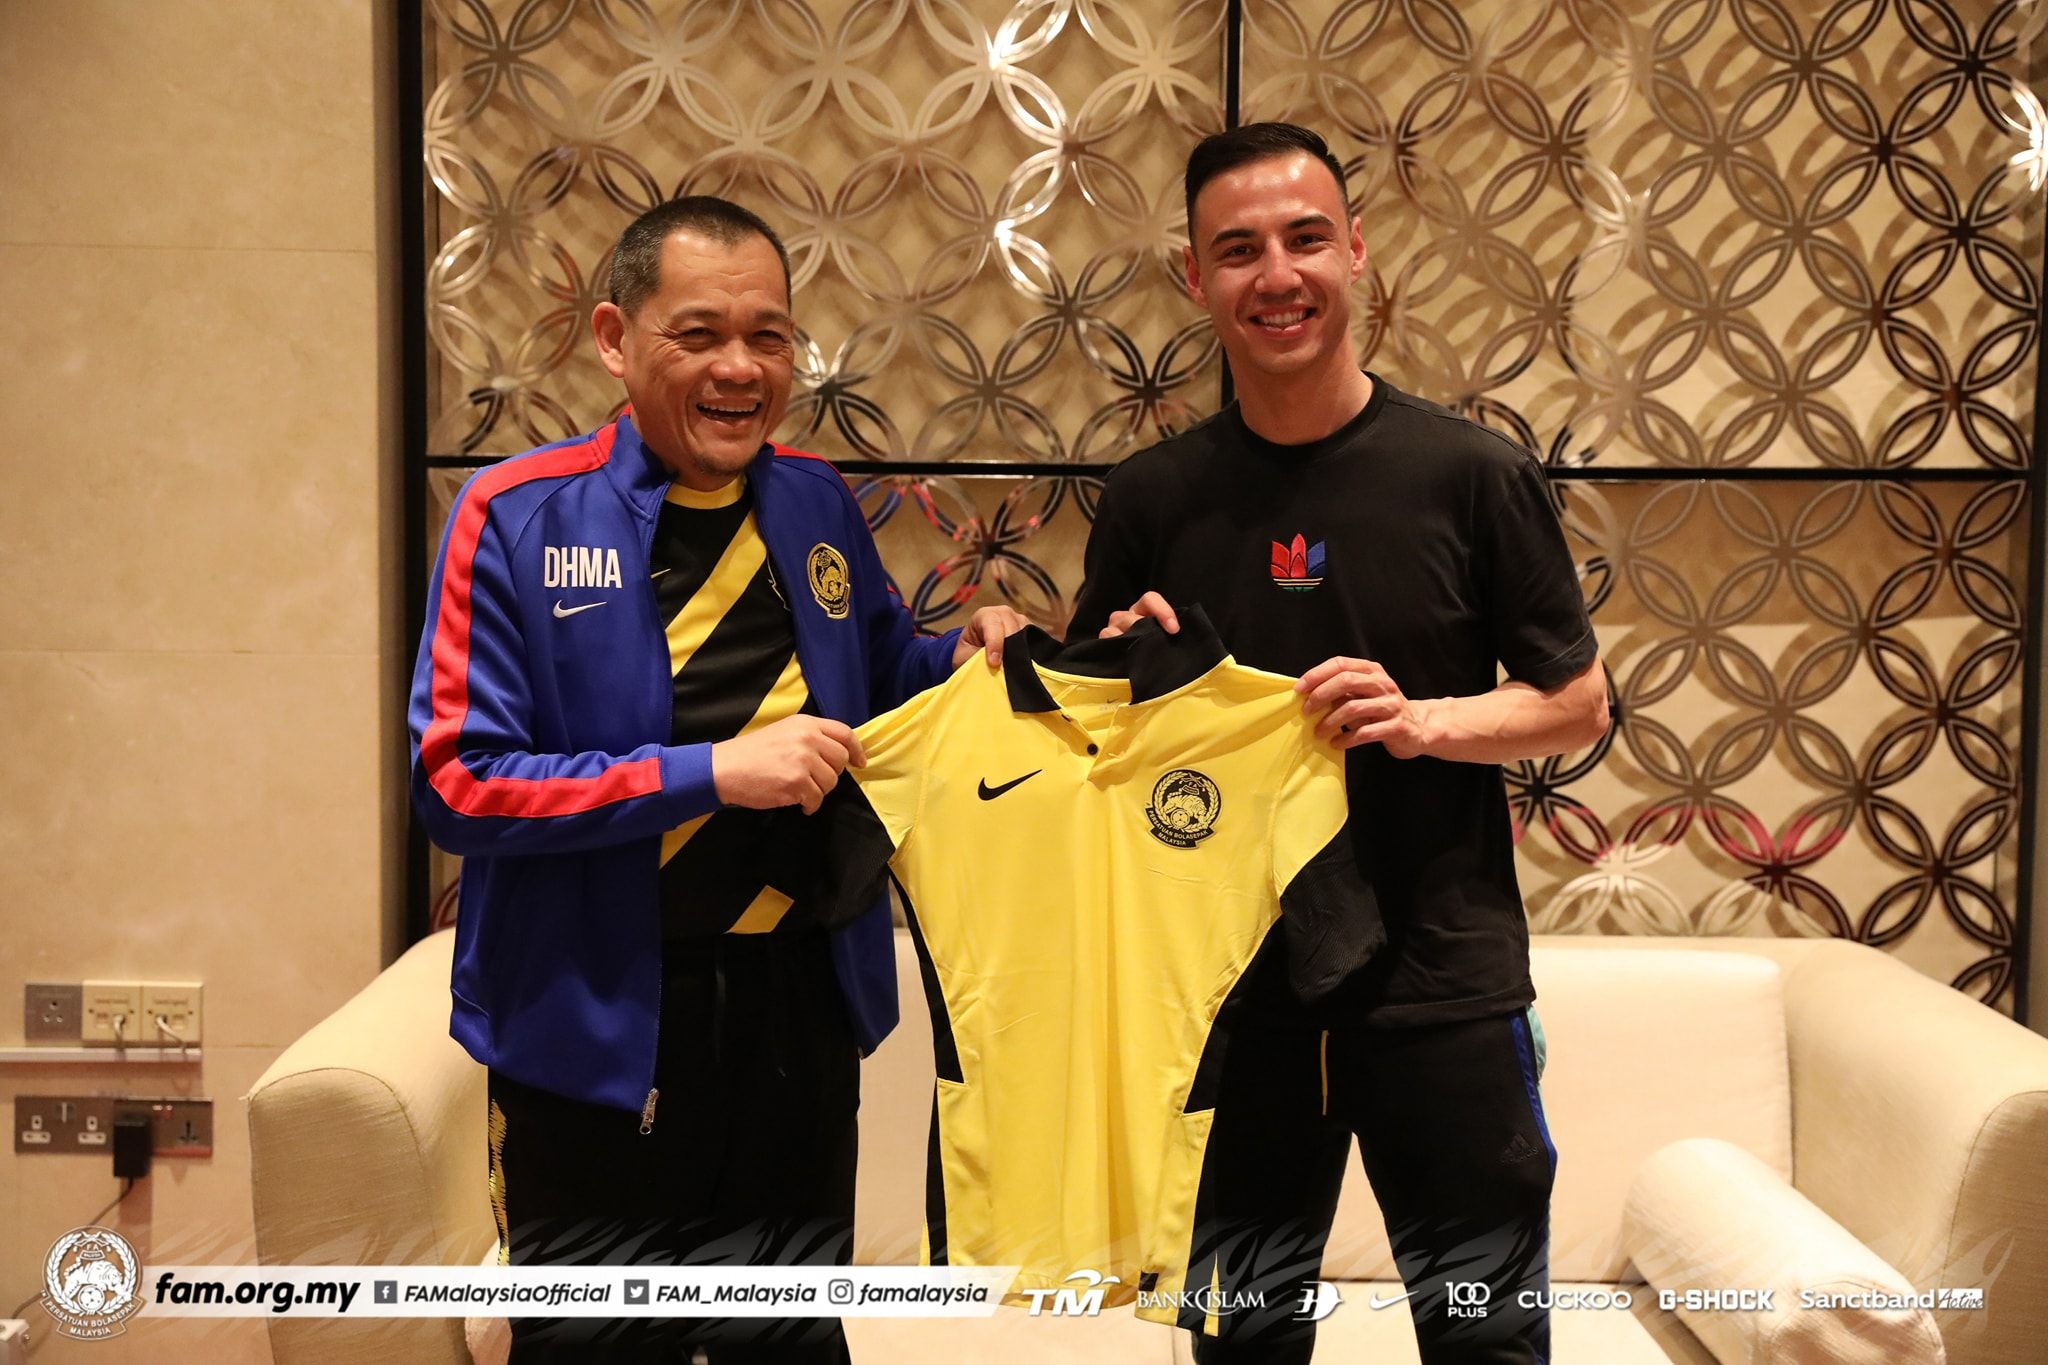 Bek kanan Dion Cools saat diperkenalkan oleh Presiden FAM, Datuk Hamidin Mohd Amin (kiri) secara resmi sebagai pemain timnas Malaysia di Dubai pada 1 Juni 2021.